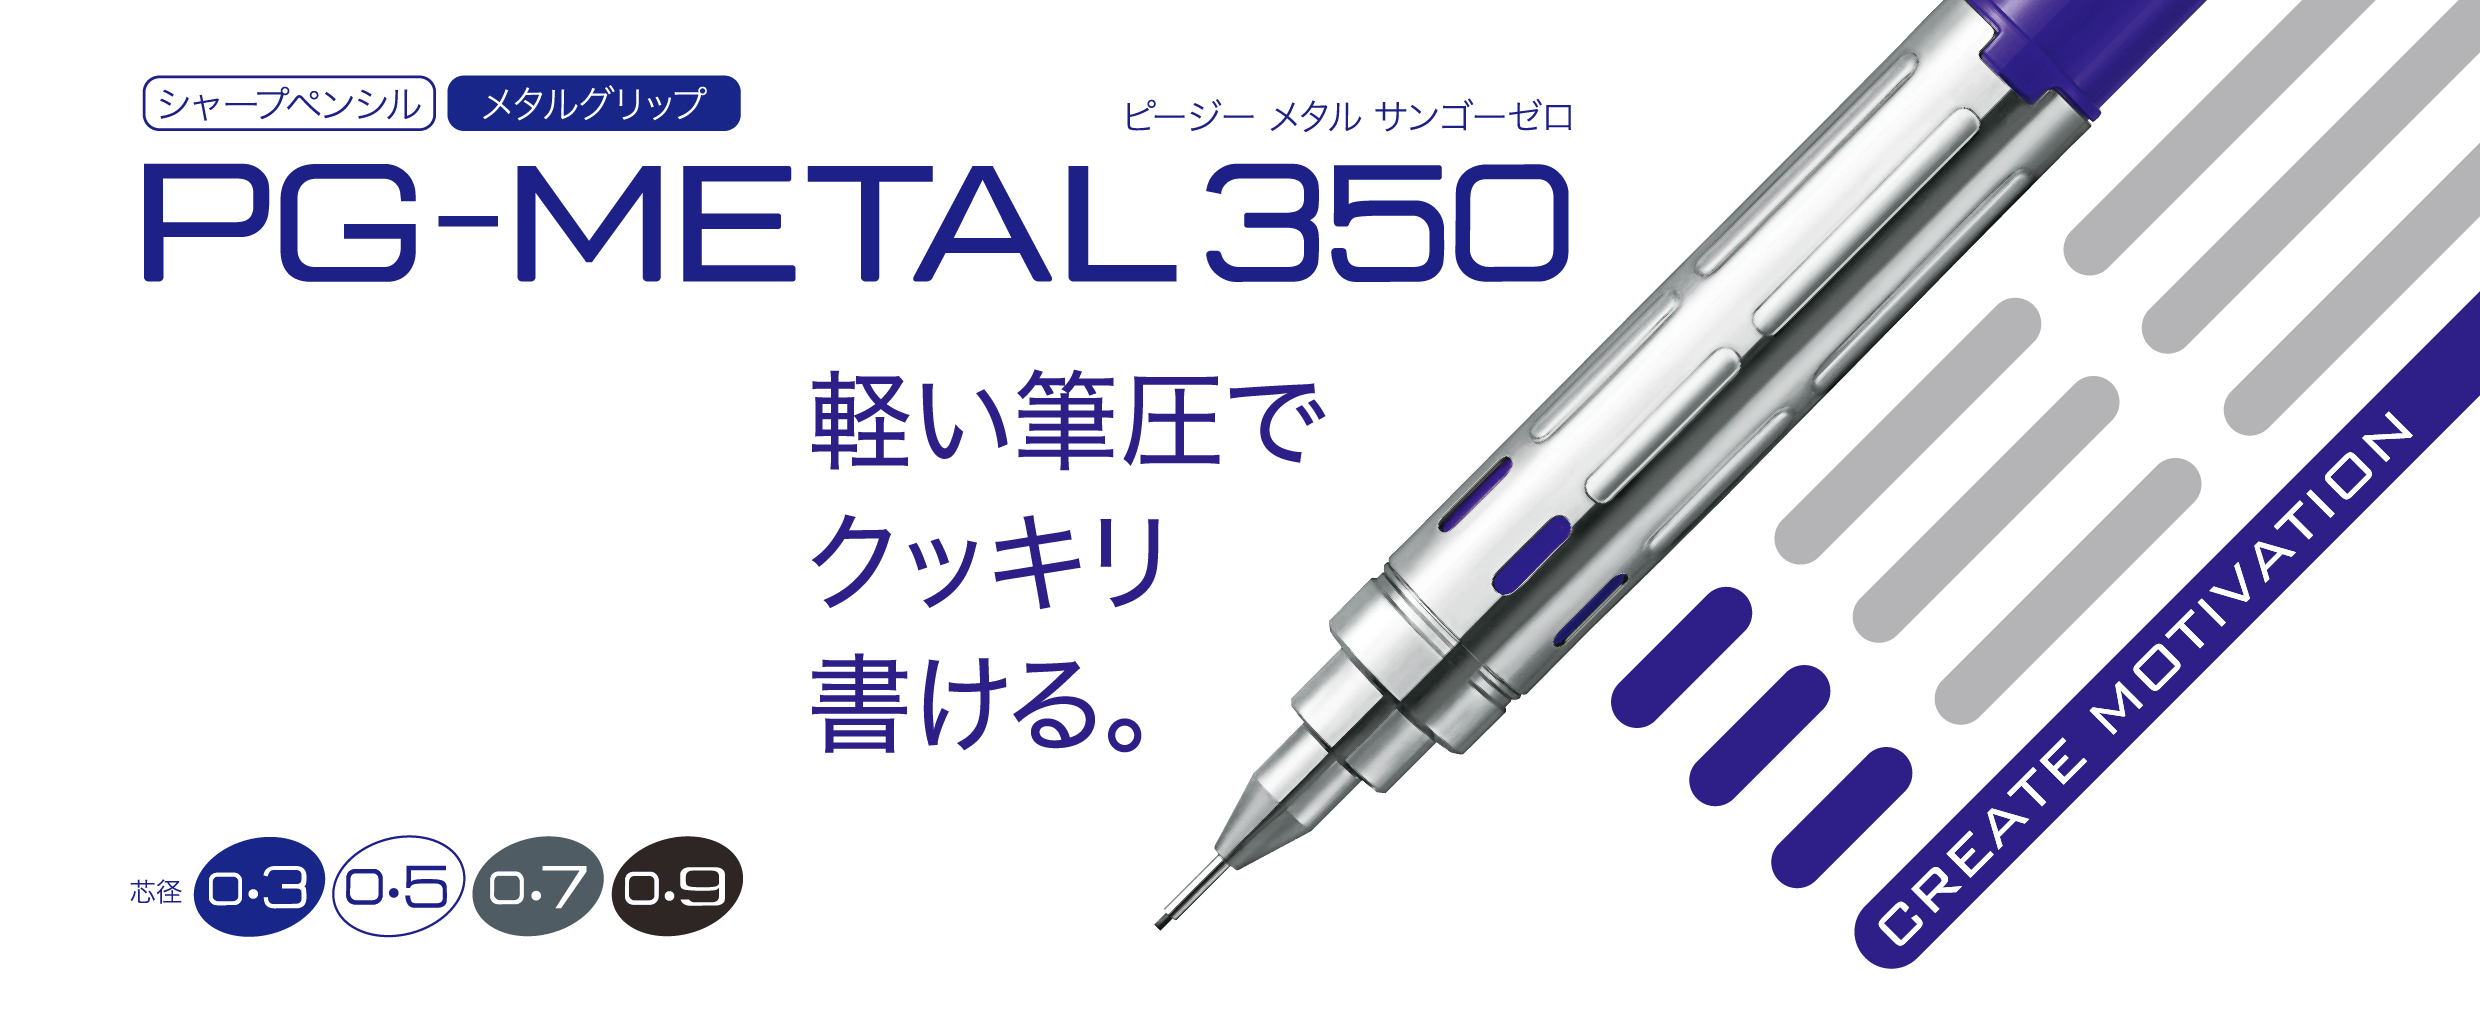 PG-METAL350